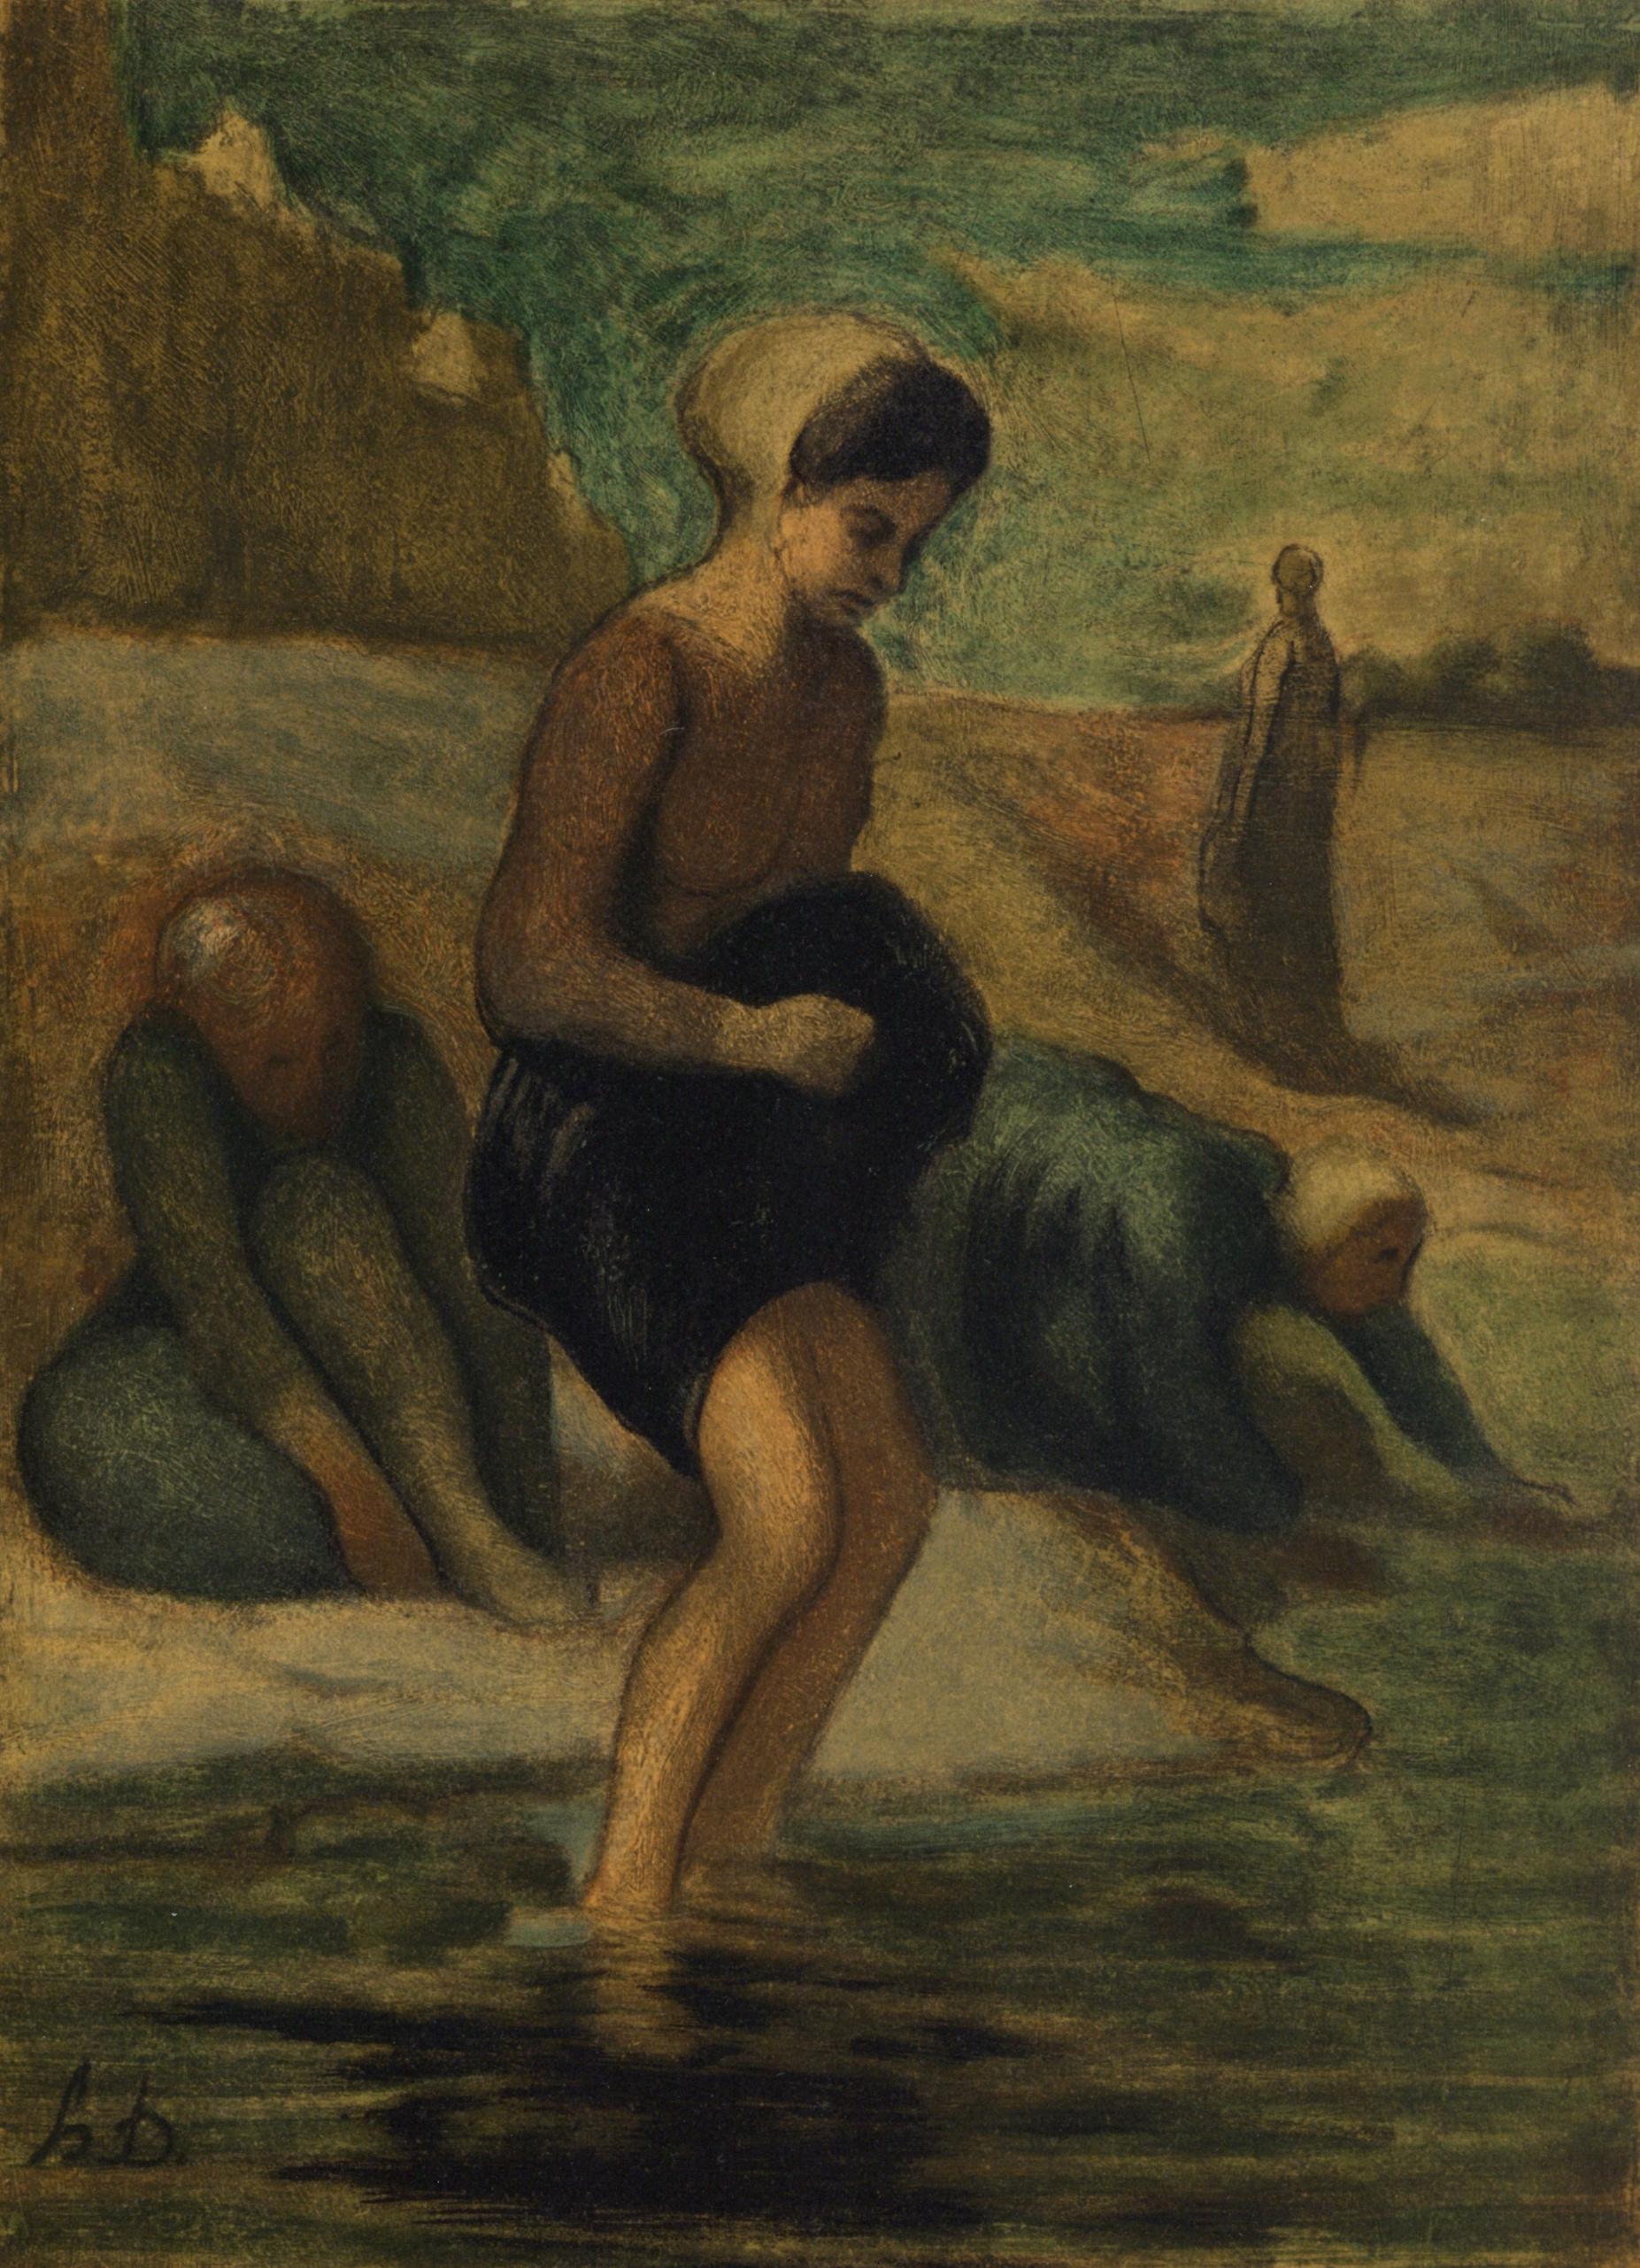 (after) Honore Daumier - "Au bord de l'eau" lithograph - Print by Honoré Daumier